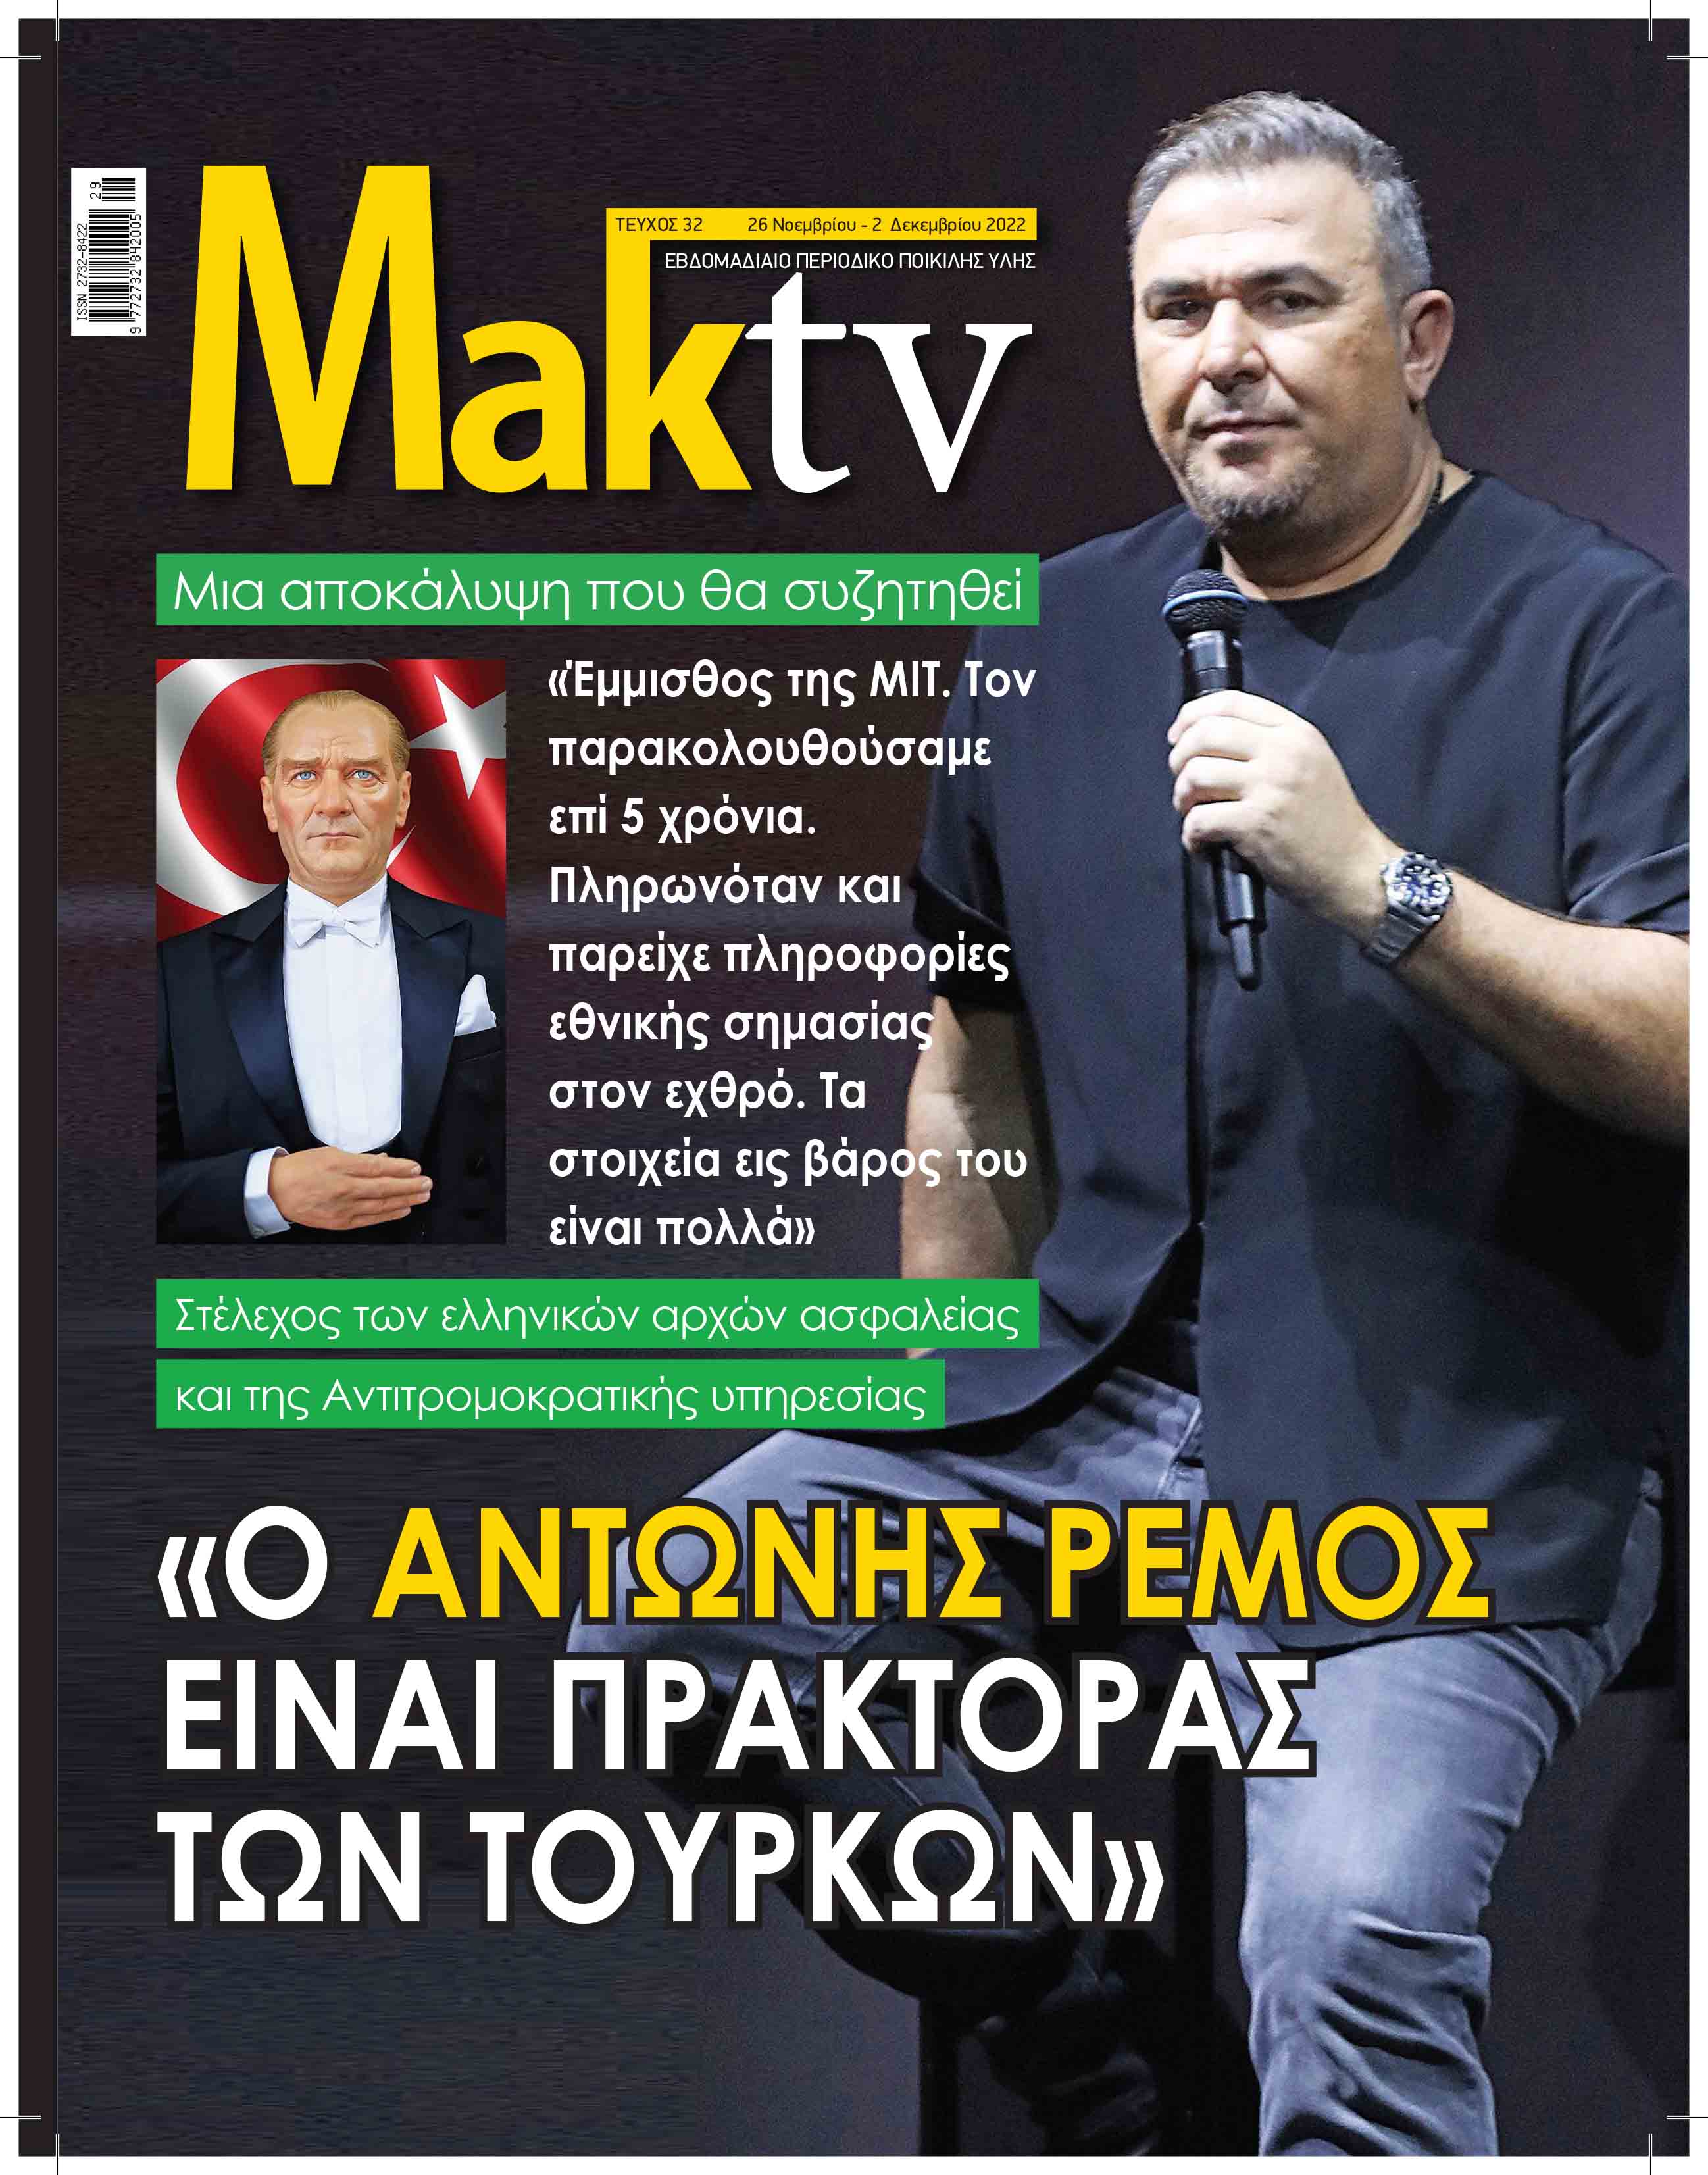 MakTV_COVER 26-11-2022